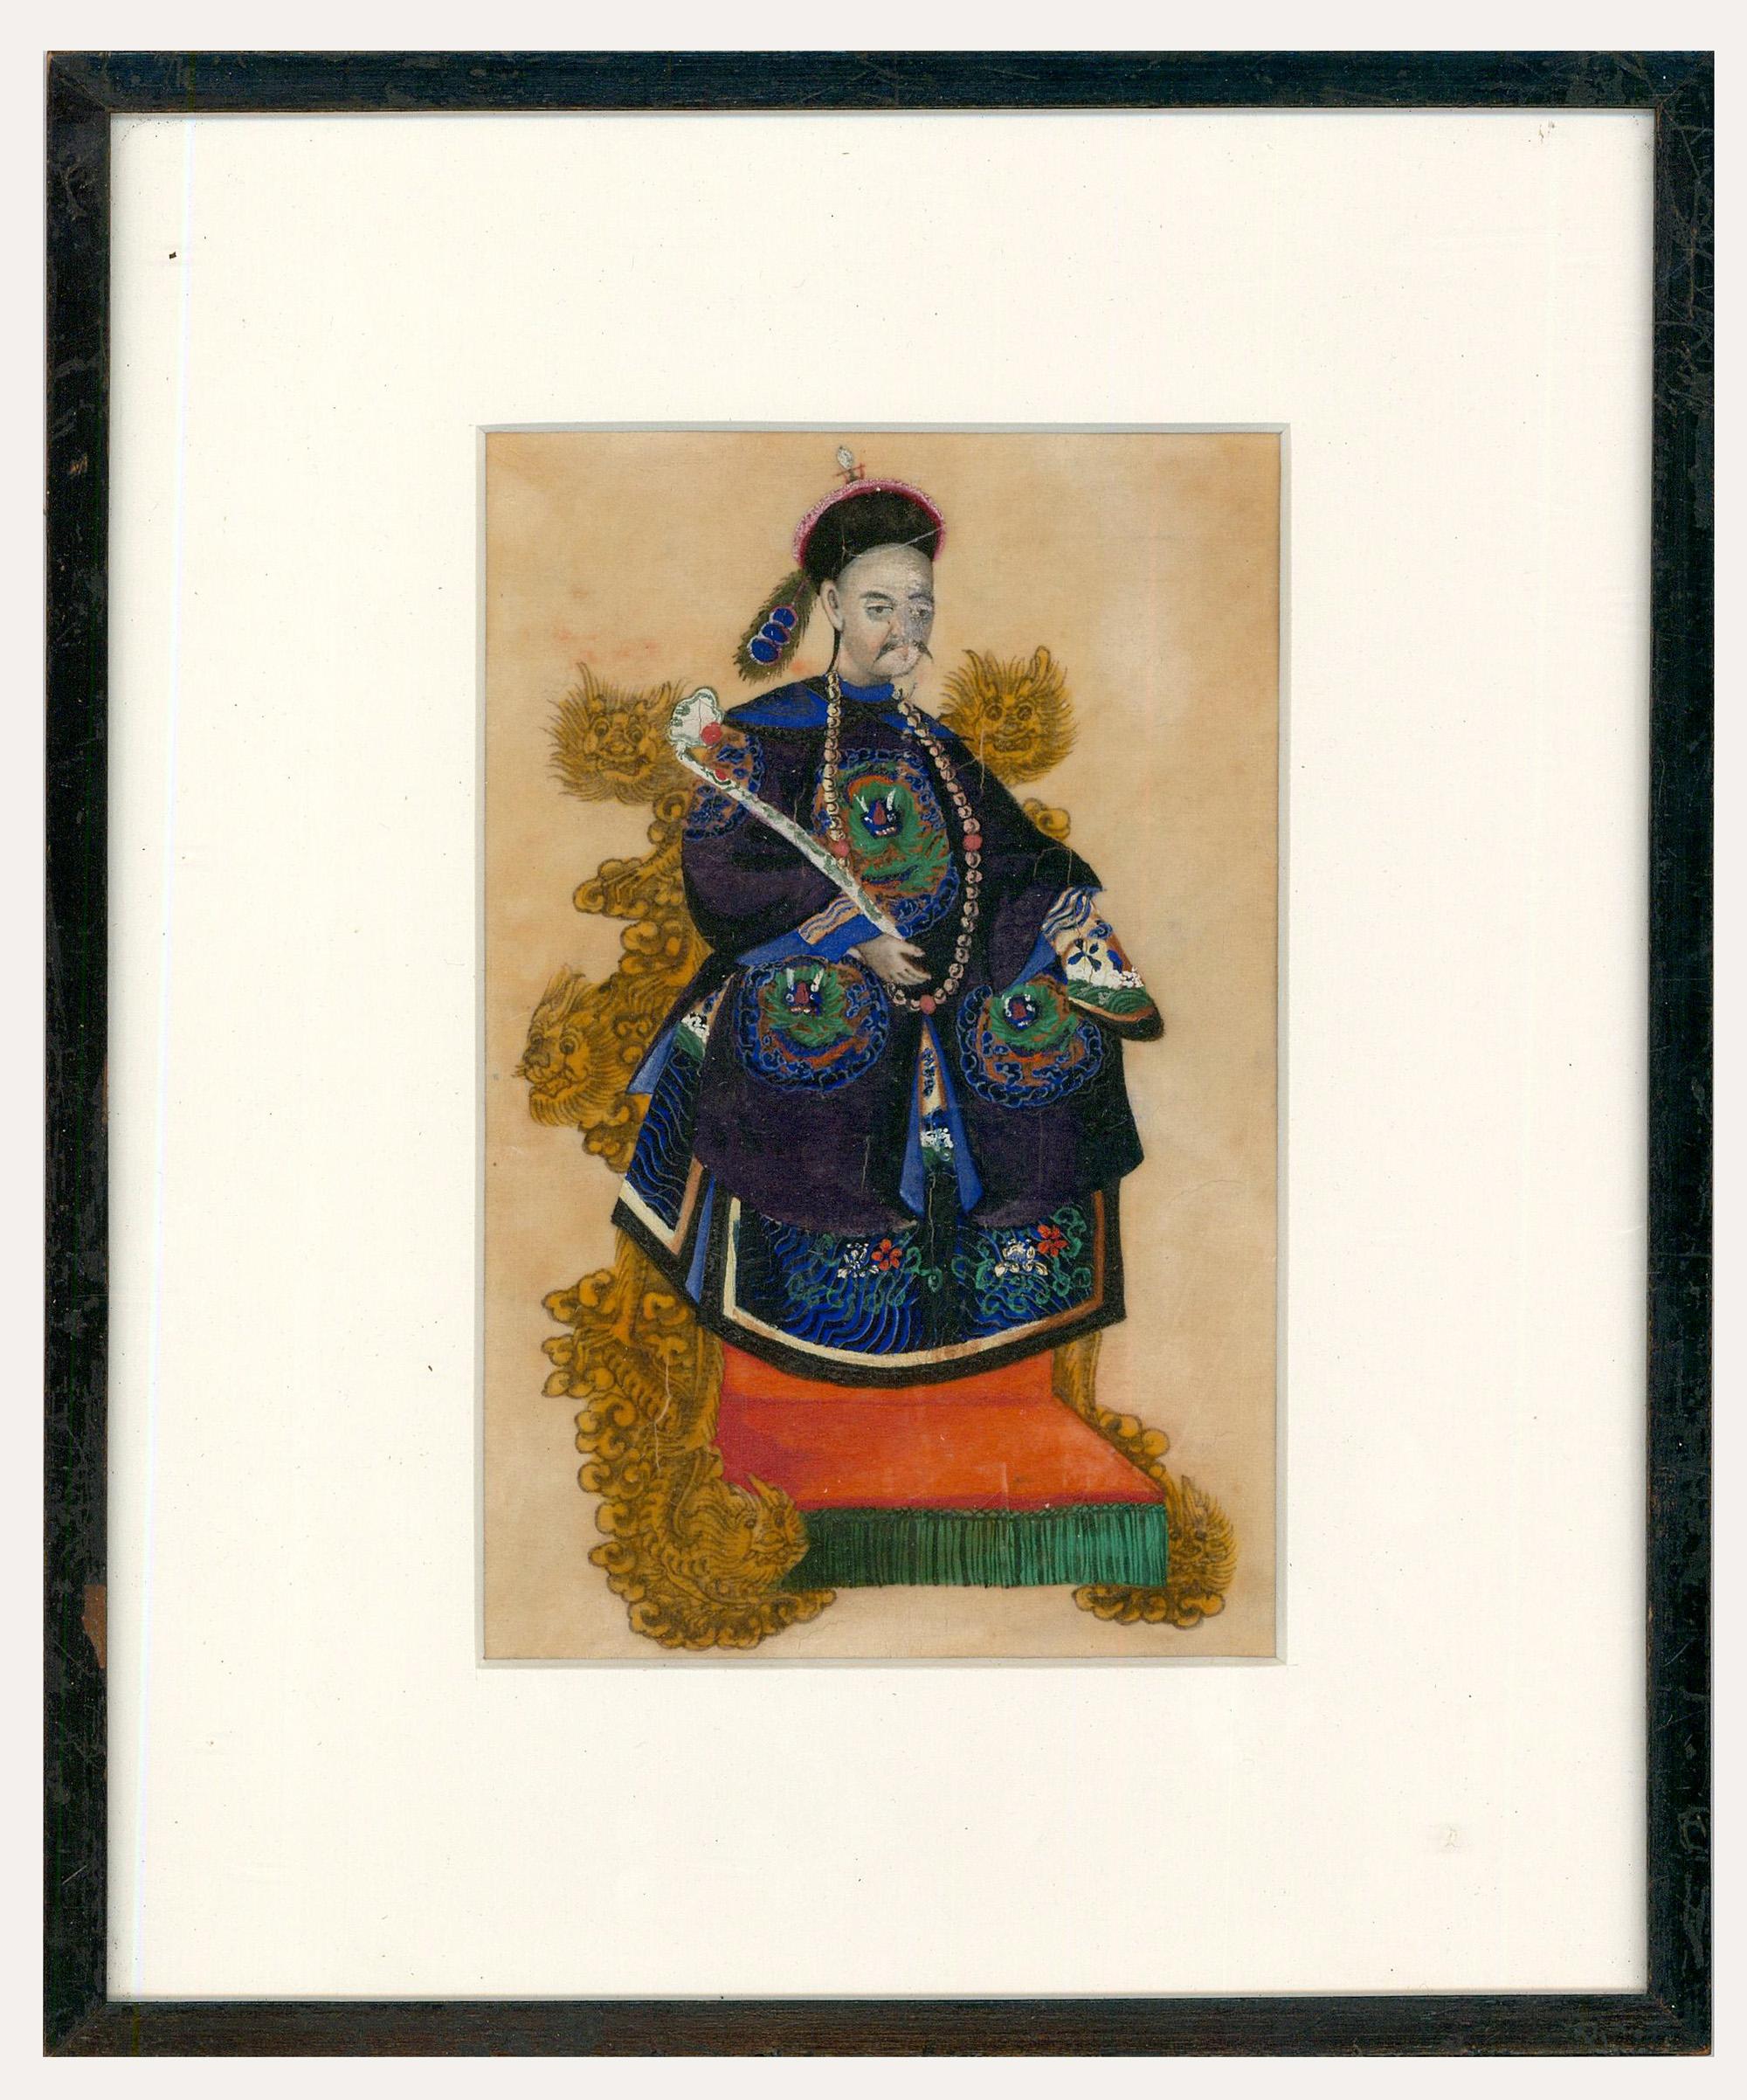 Unknown Portrait – Schönes Aquarell der chinesischen Schule des 19. Jahrhunderts - The Emperor